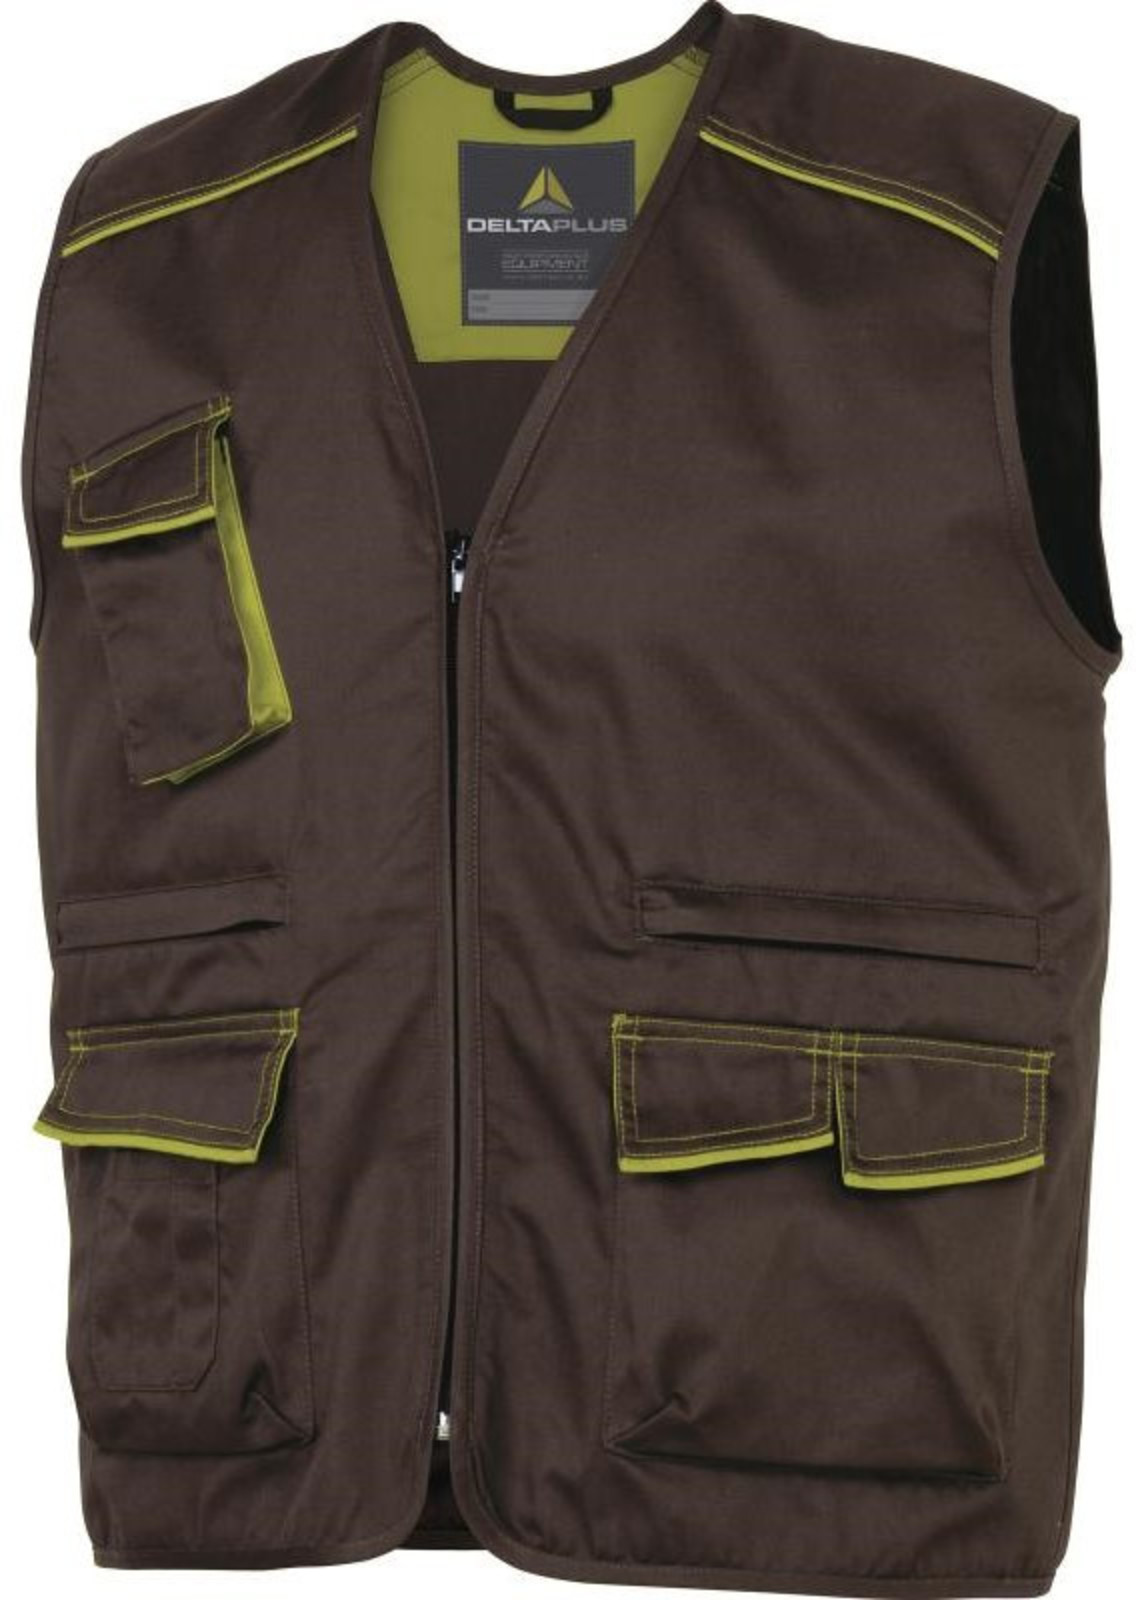 Pracovná vesta Delta Plus Panostyle M6gil  - veľkosť: 3XL, farba: hnedá/zelená